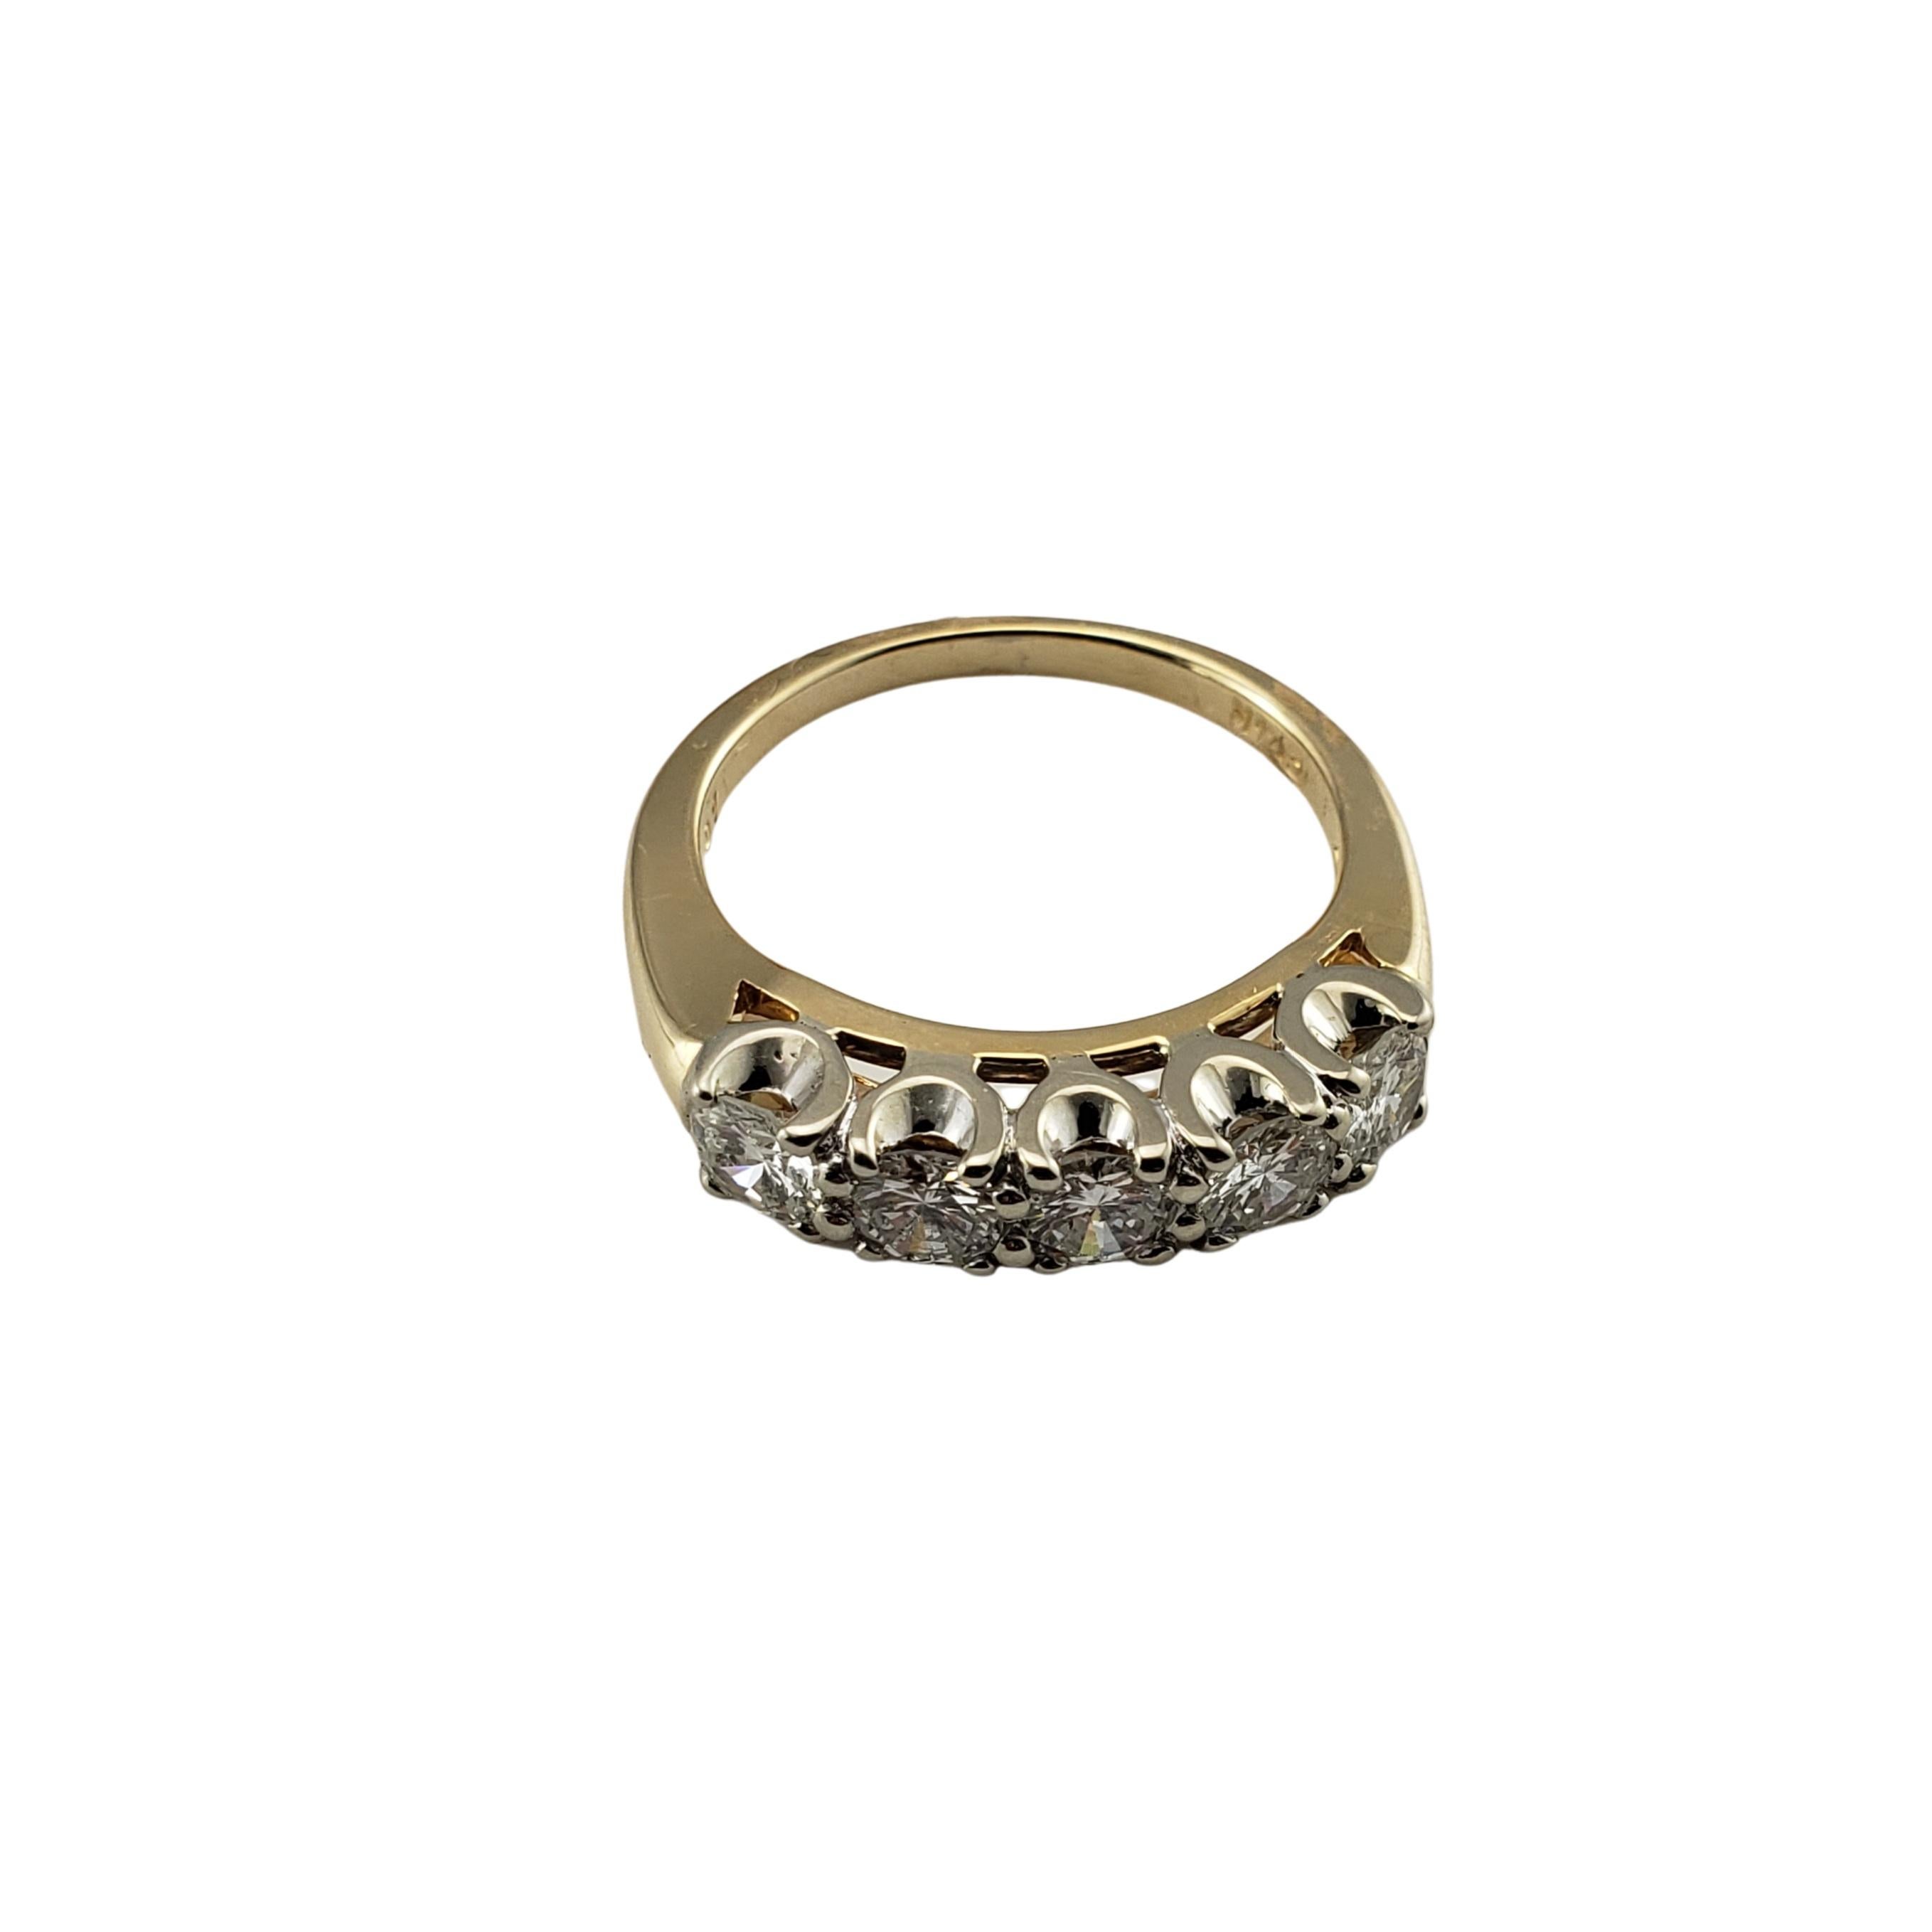 Vintage 14 Karat Yellow Gold Diamond Wedding Band Ring Size 6.5-

Cette bague étincelante présente cinq diamants ronds de taille brillante sertis dans de l'or jaune 14K classique. Largeur : 4 mm. Tige : 2 mm.

Poids total approximatif des diamants :